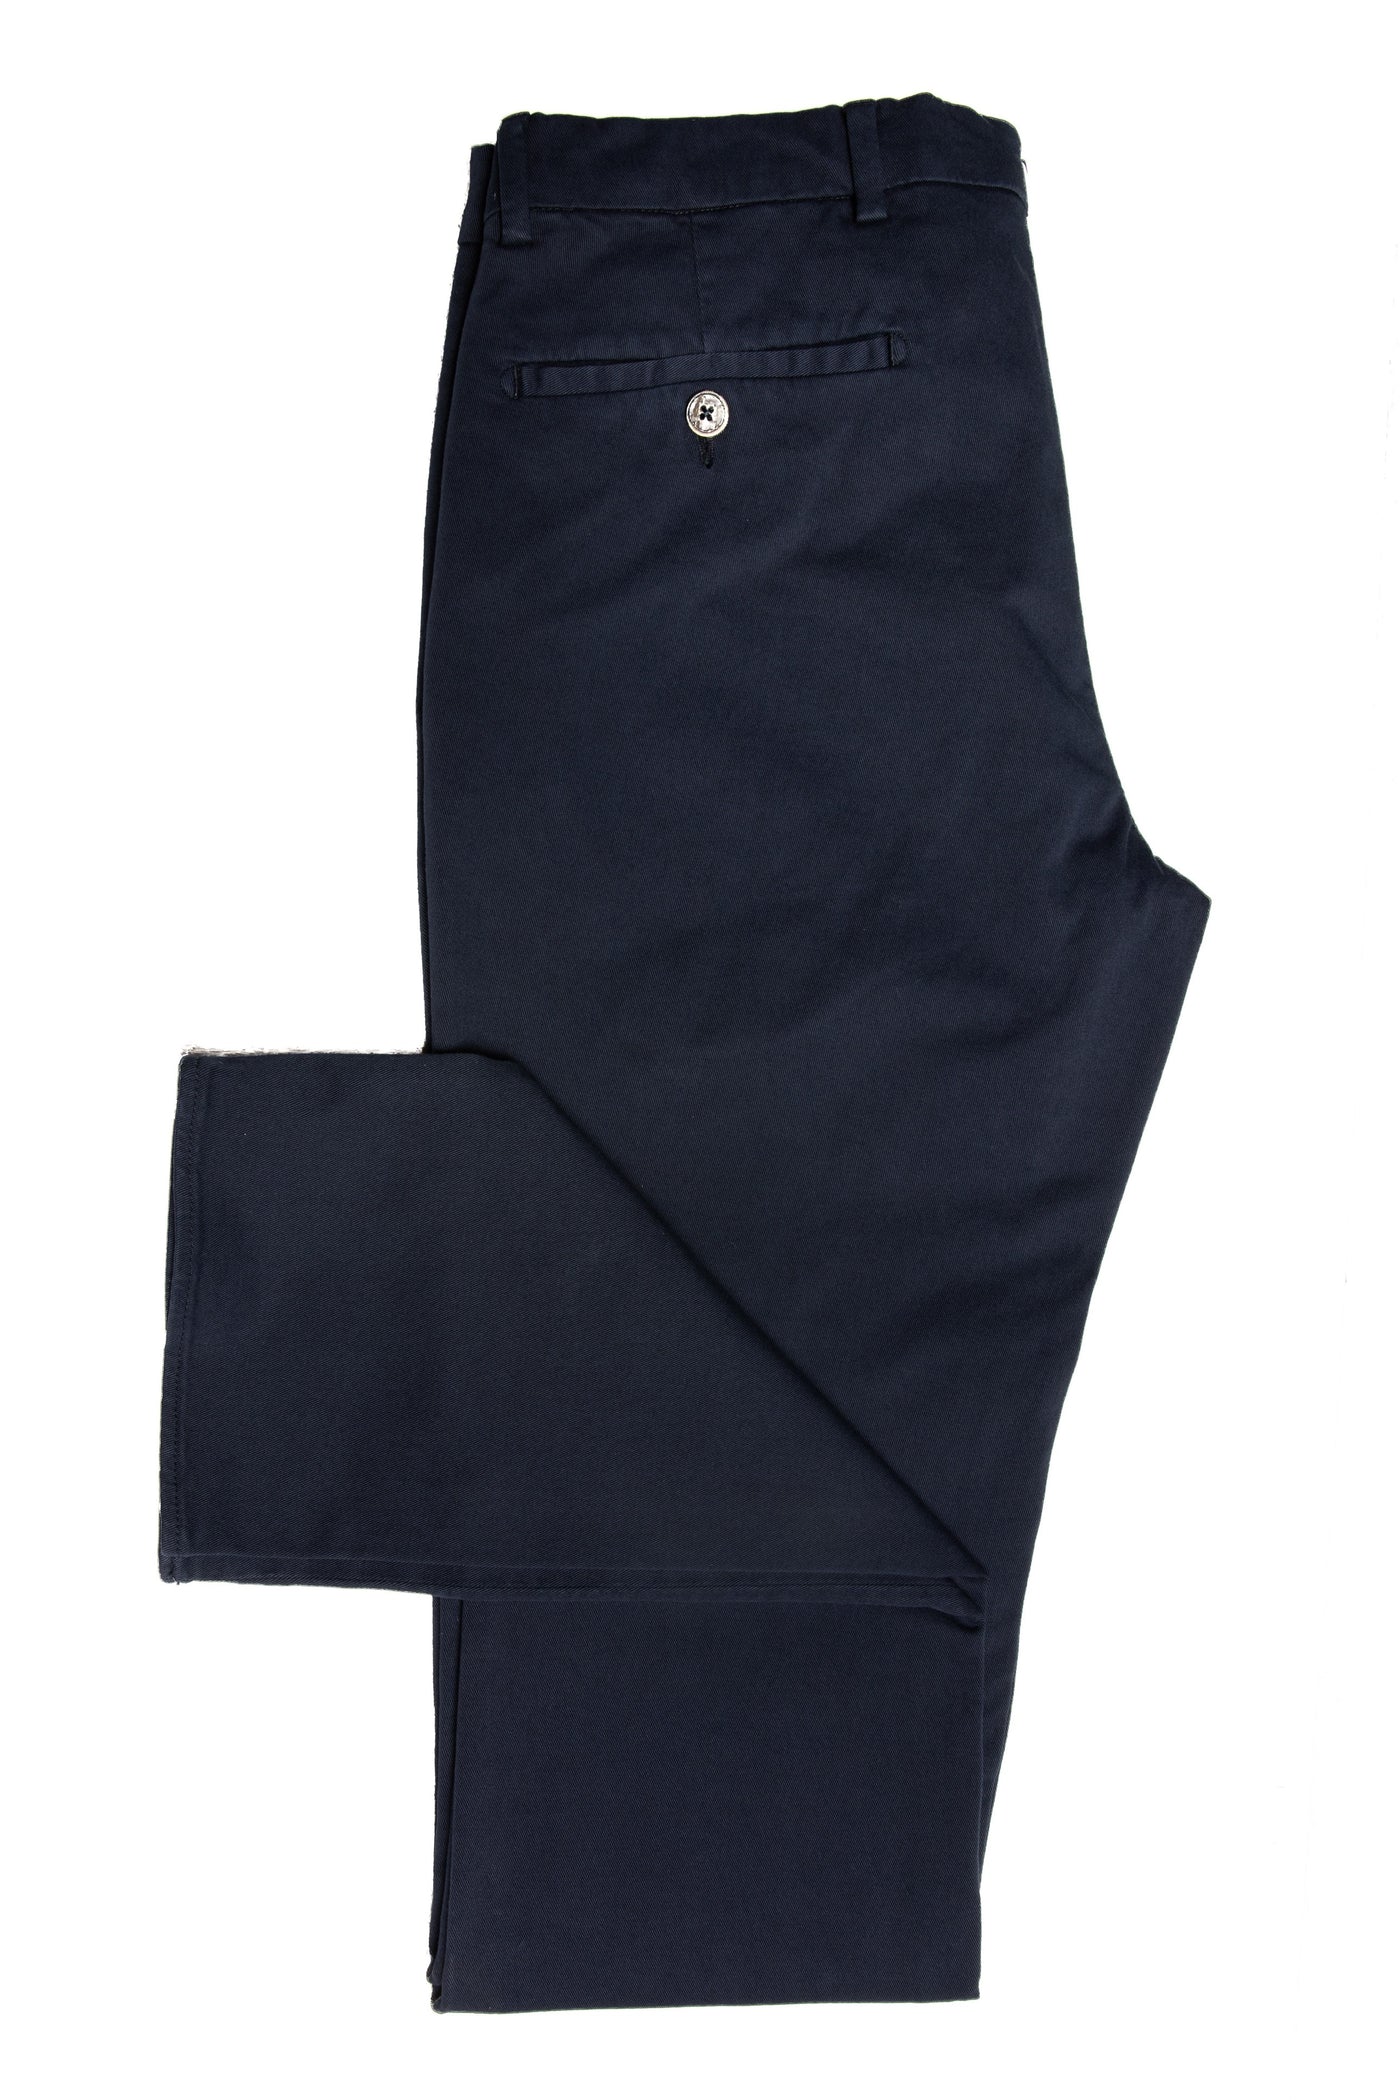 Pantalon Casual Chinos din Bumbac Bleumarin